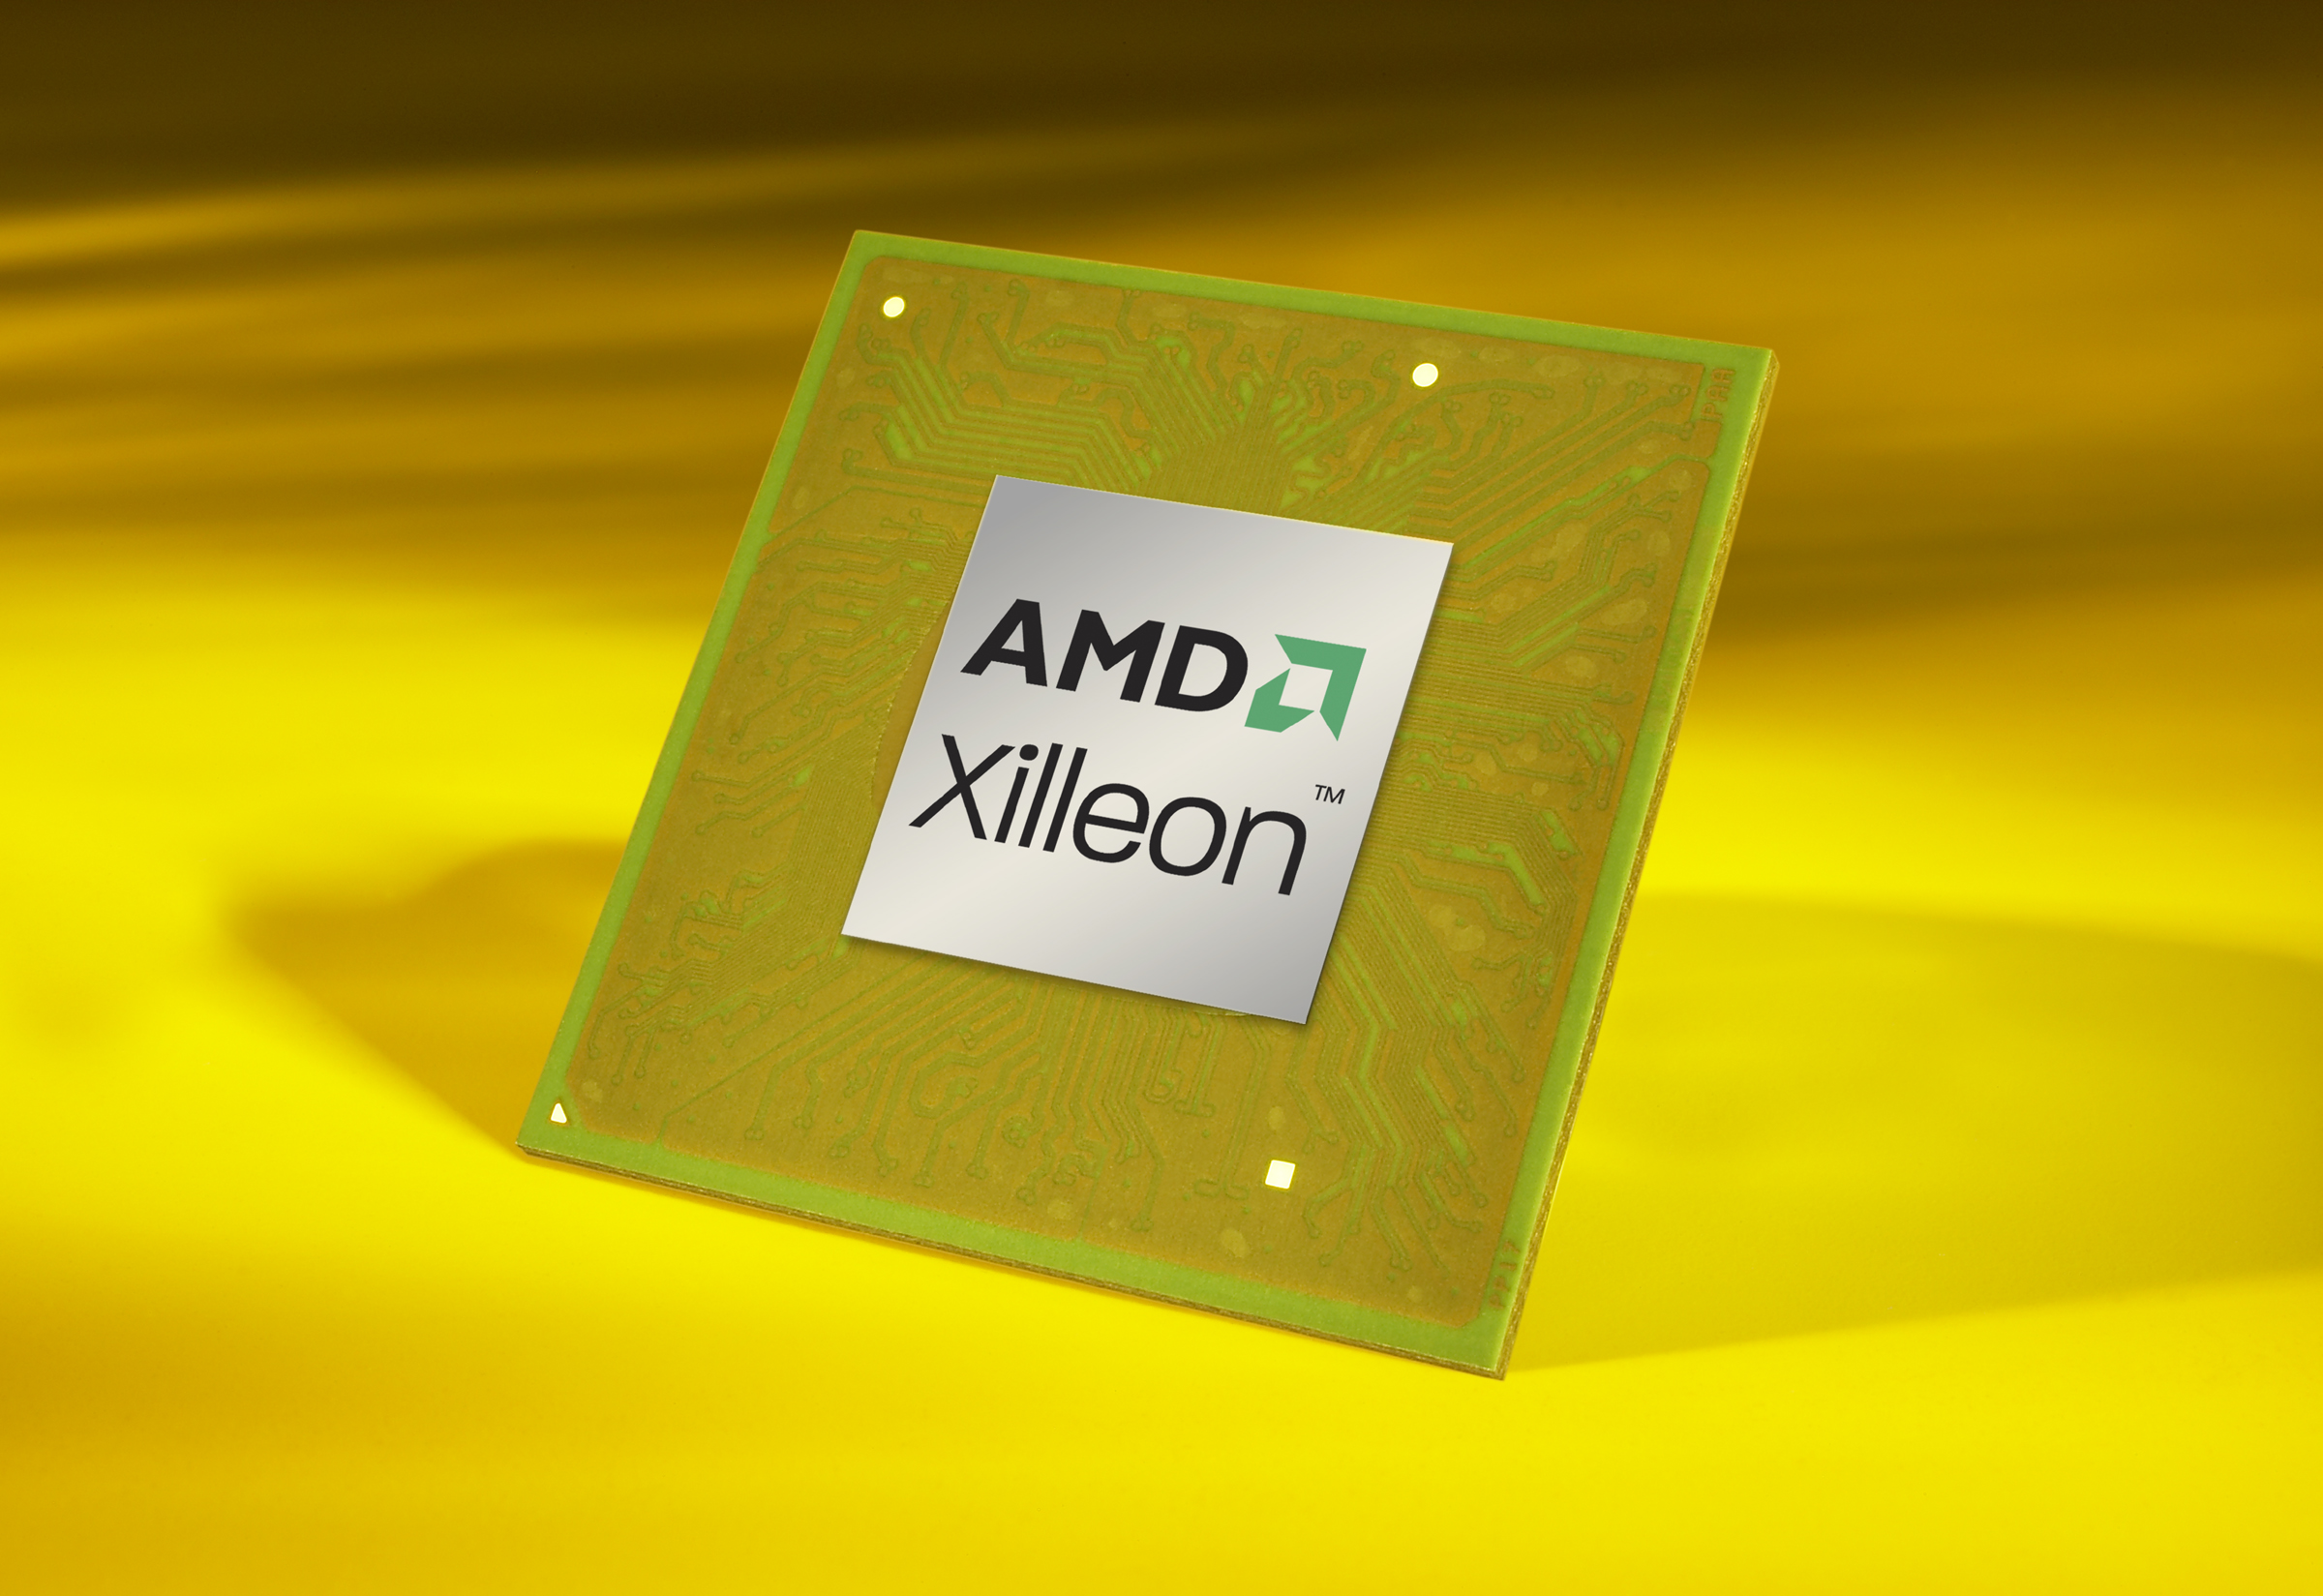 Immagine pubblicata in relazione al seguente contenuto: AMD annuncia le cpu Xilleon per i televisori digitali LCD | Nome immagine: news6522_1.jpg